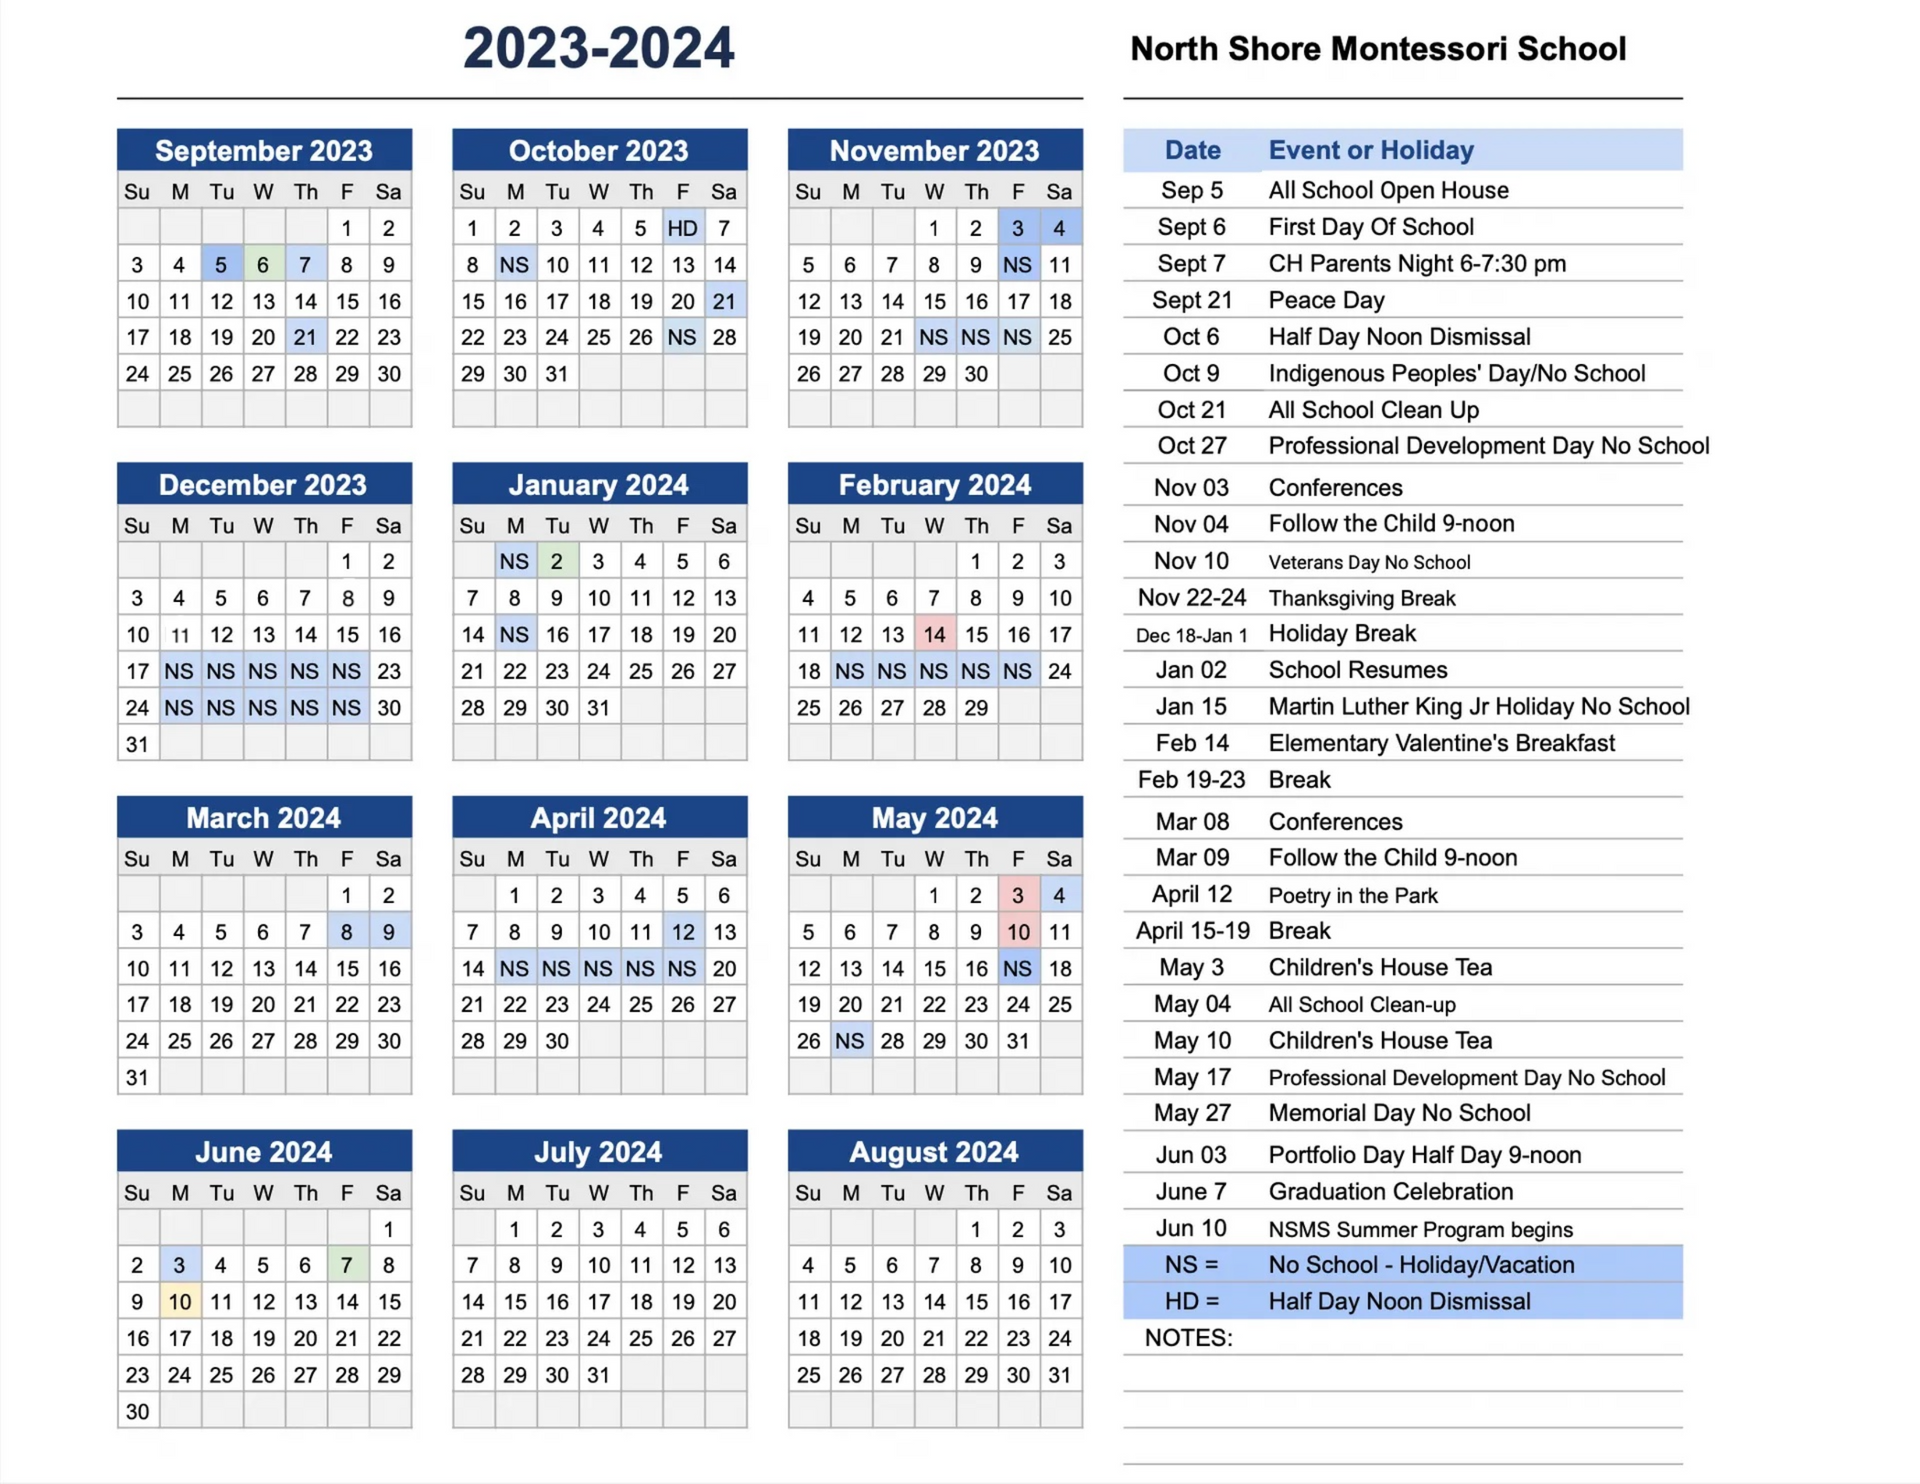 North Shore Montessori Calendar 23-24